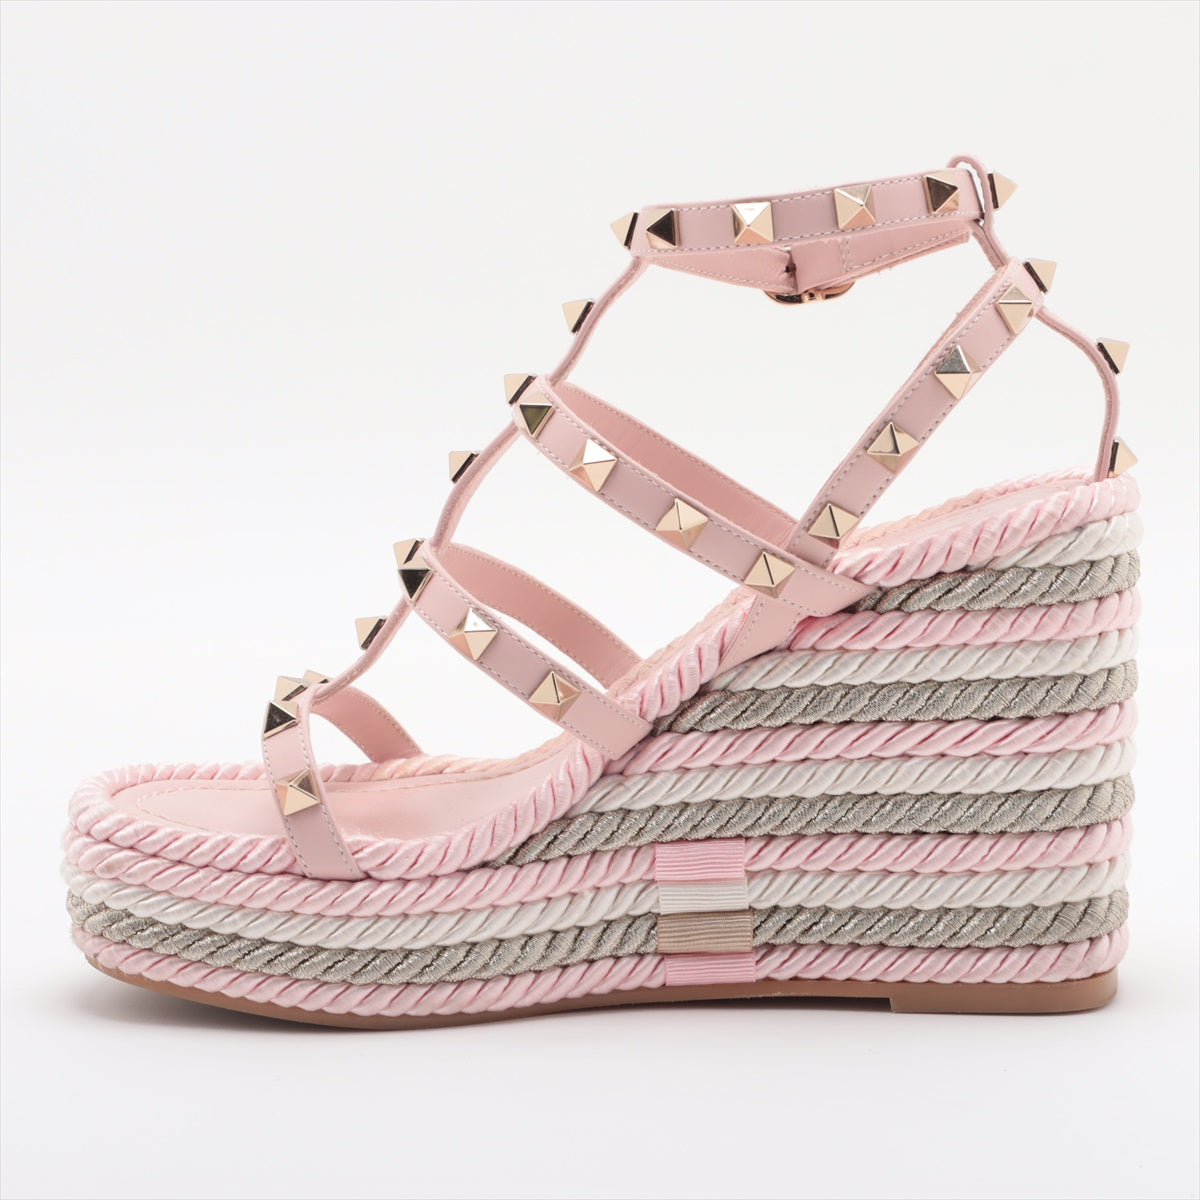 Valentino Garavani Leather Wedge Sole Sandals 34 Ladies' Pink Rock Studs